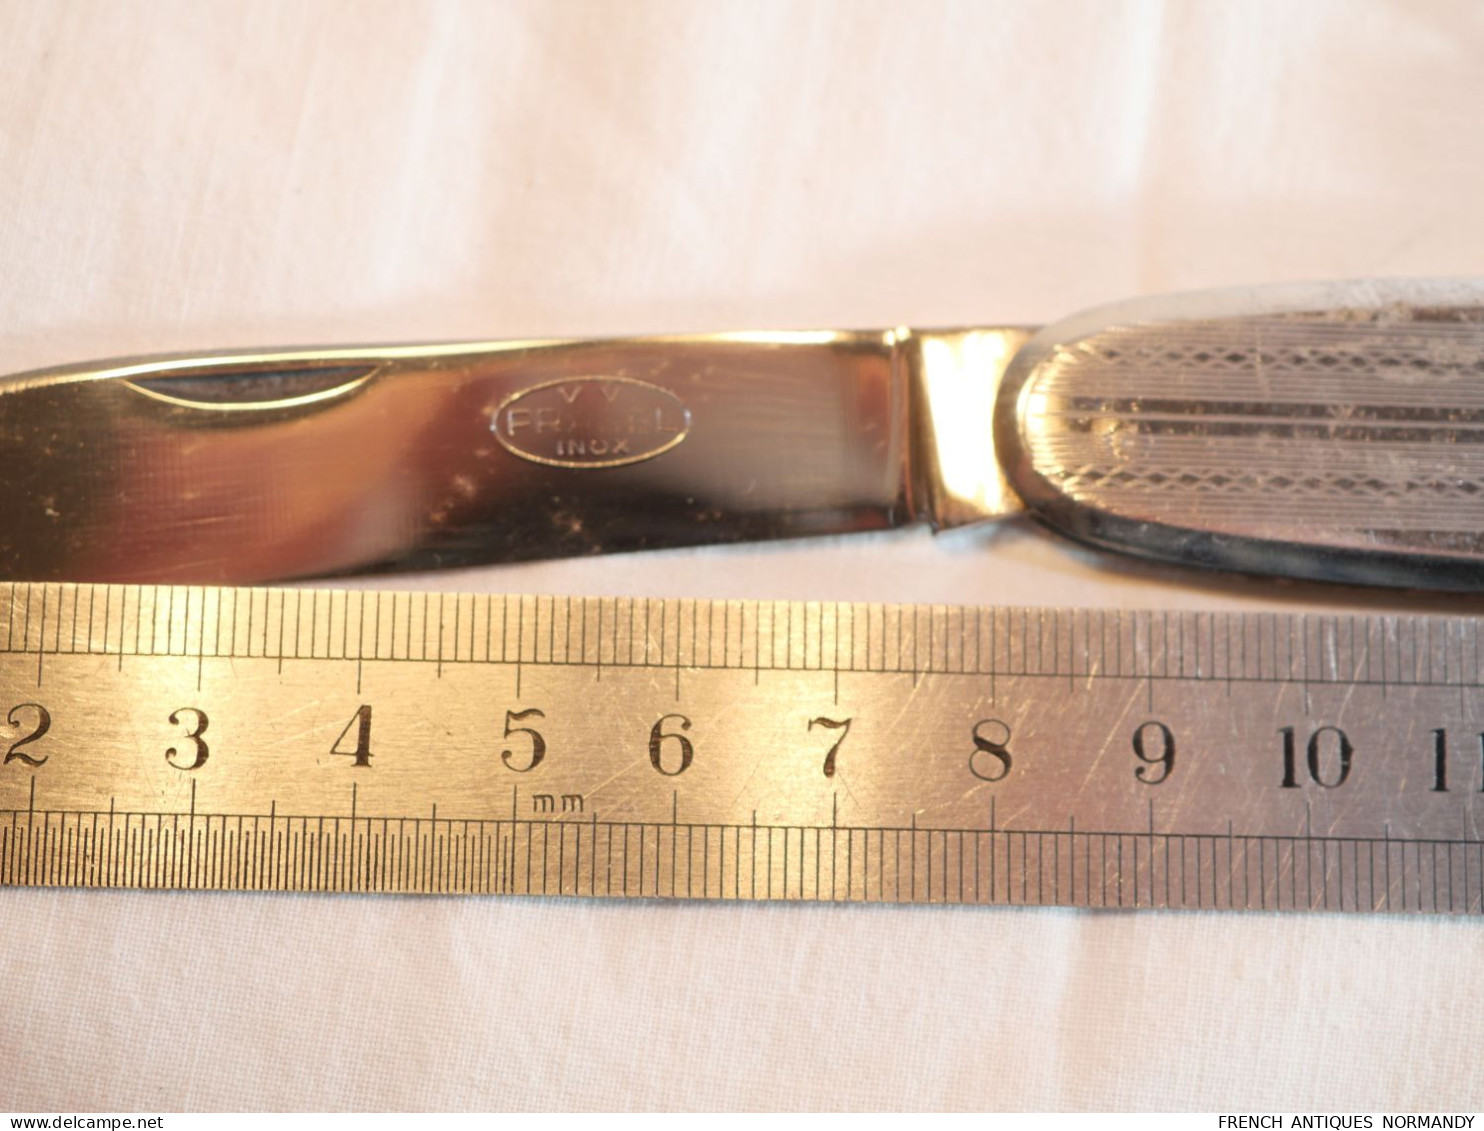 Authentique couteau de poche 3 fonctions PRADEL VV INOX   Manche à plaquettes INOX  Lame bien marquée VV PRADEL INOX